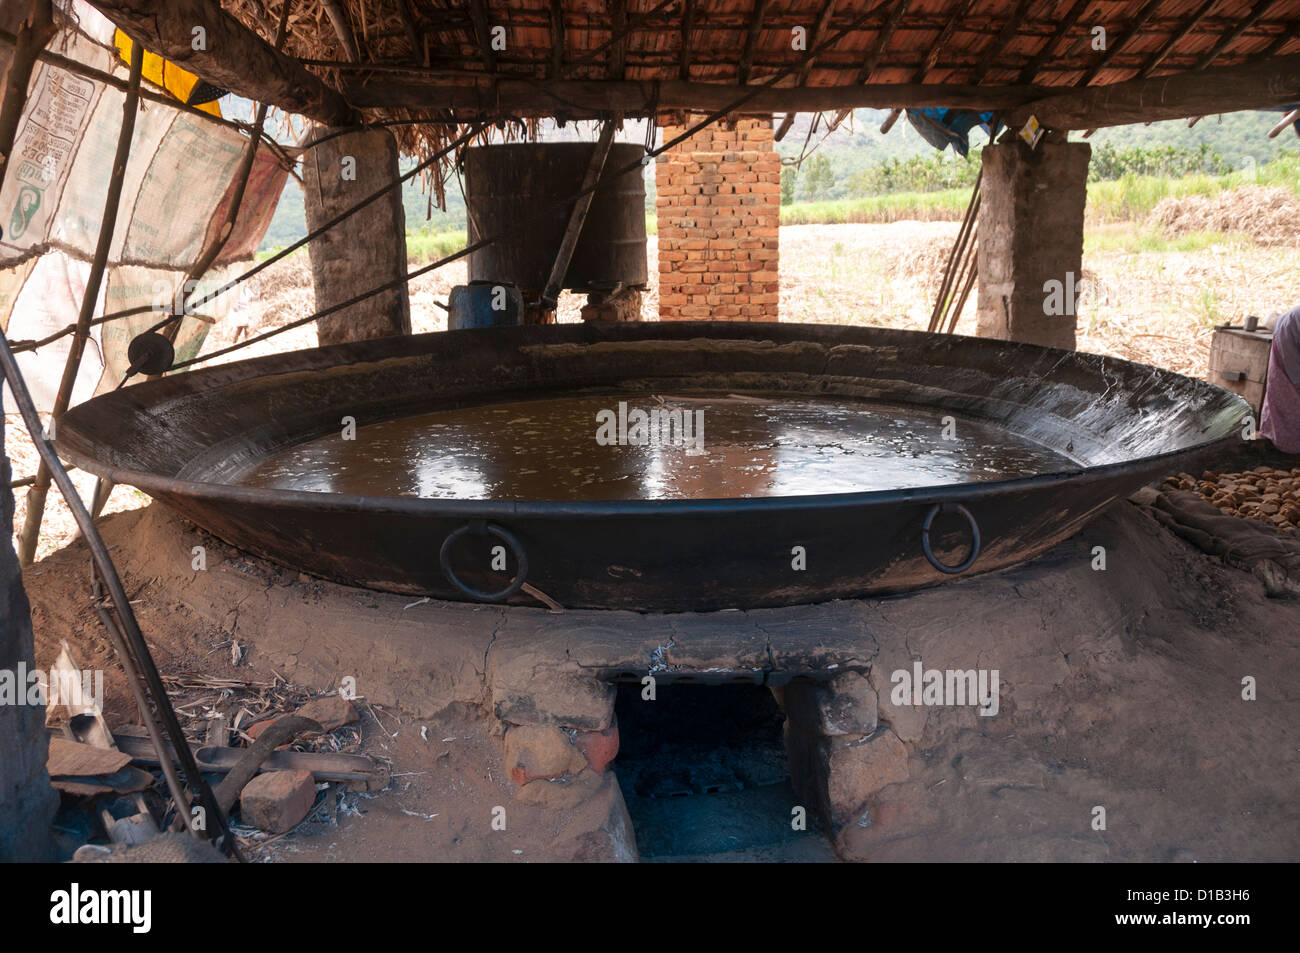 La production indienne de jagré - faire de jagré à partir de jus de canne, Koviloor, près de Munnar, Kerala, Inde, Asie Banque D'Images